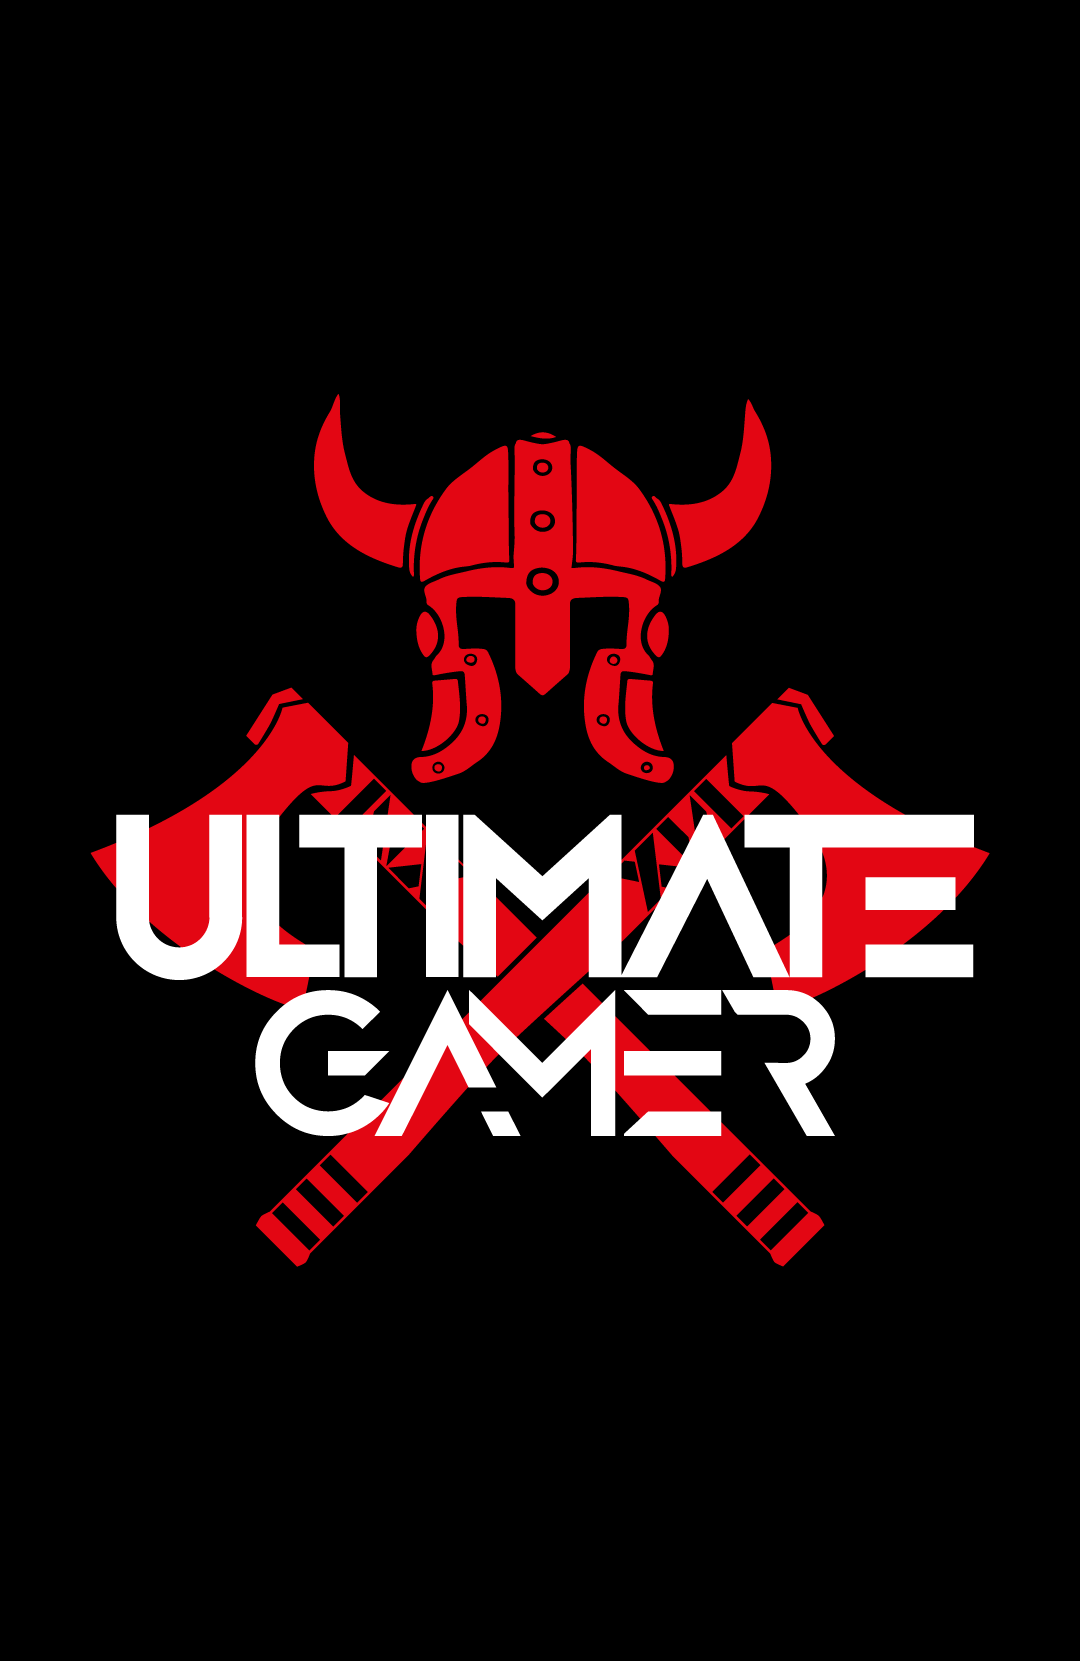 Gamer Logo - Ultimate Gamer